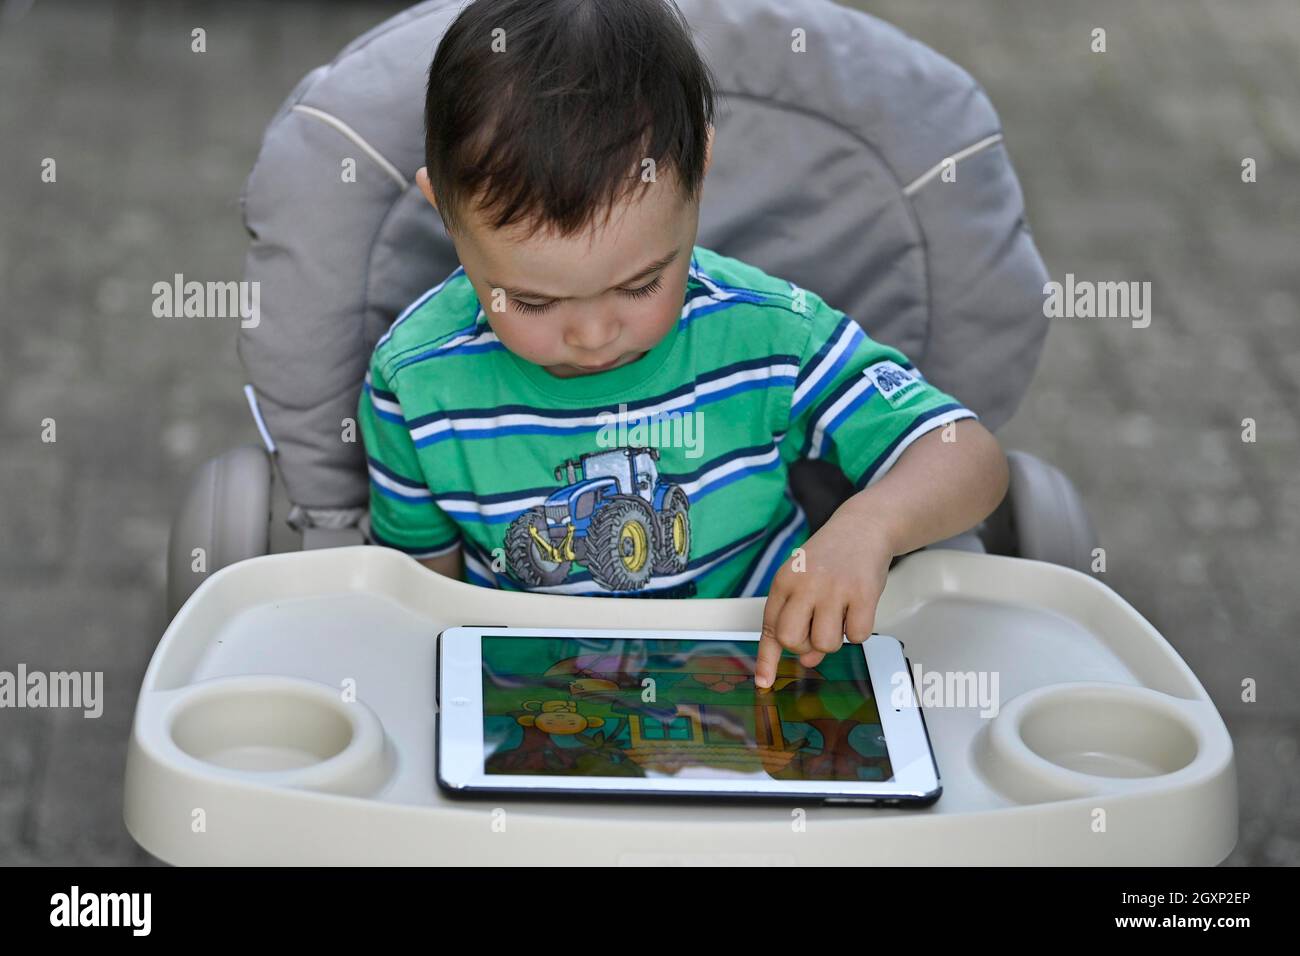 Tout-petit, 2 ans, multiethnique, eurasien, assis en chaise haute et jouant à un jeu éducatif sur tablette, Stuttgart, Baden-Wuerttemberg, Allemagne Banque D'Images